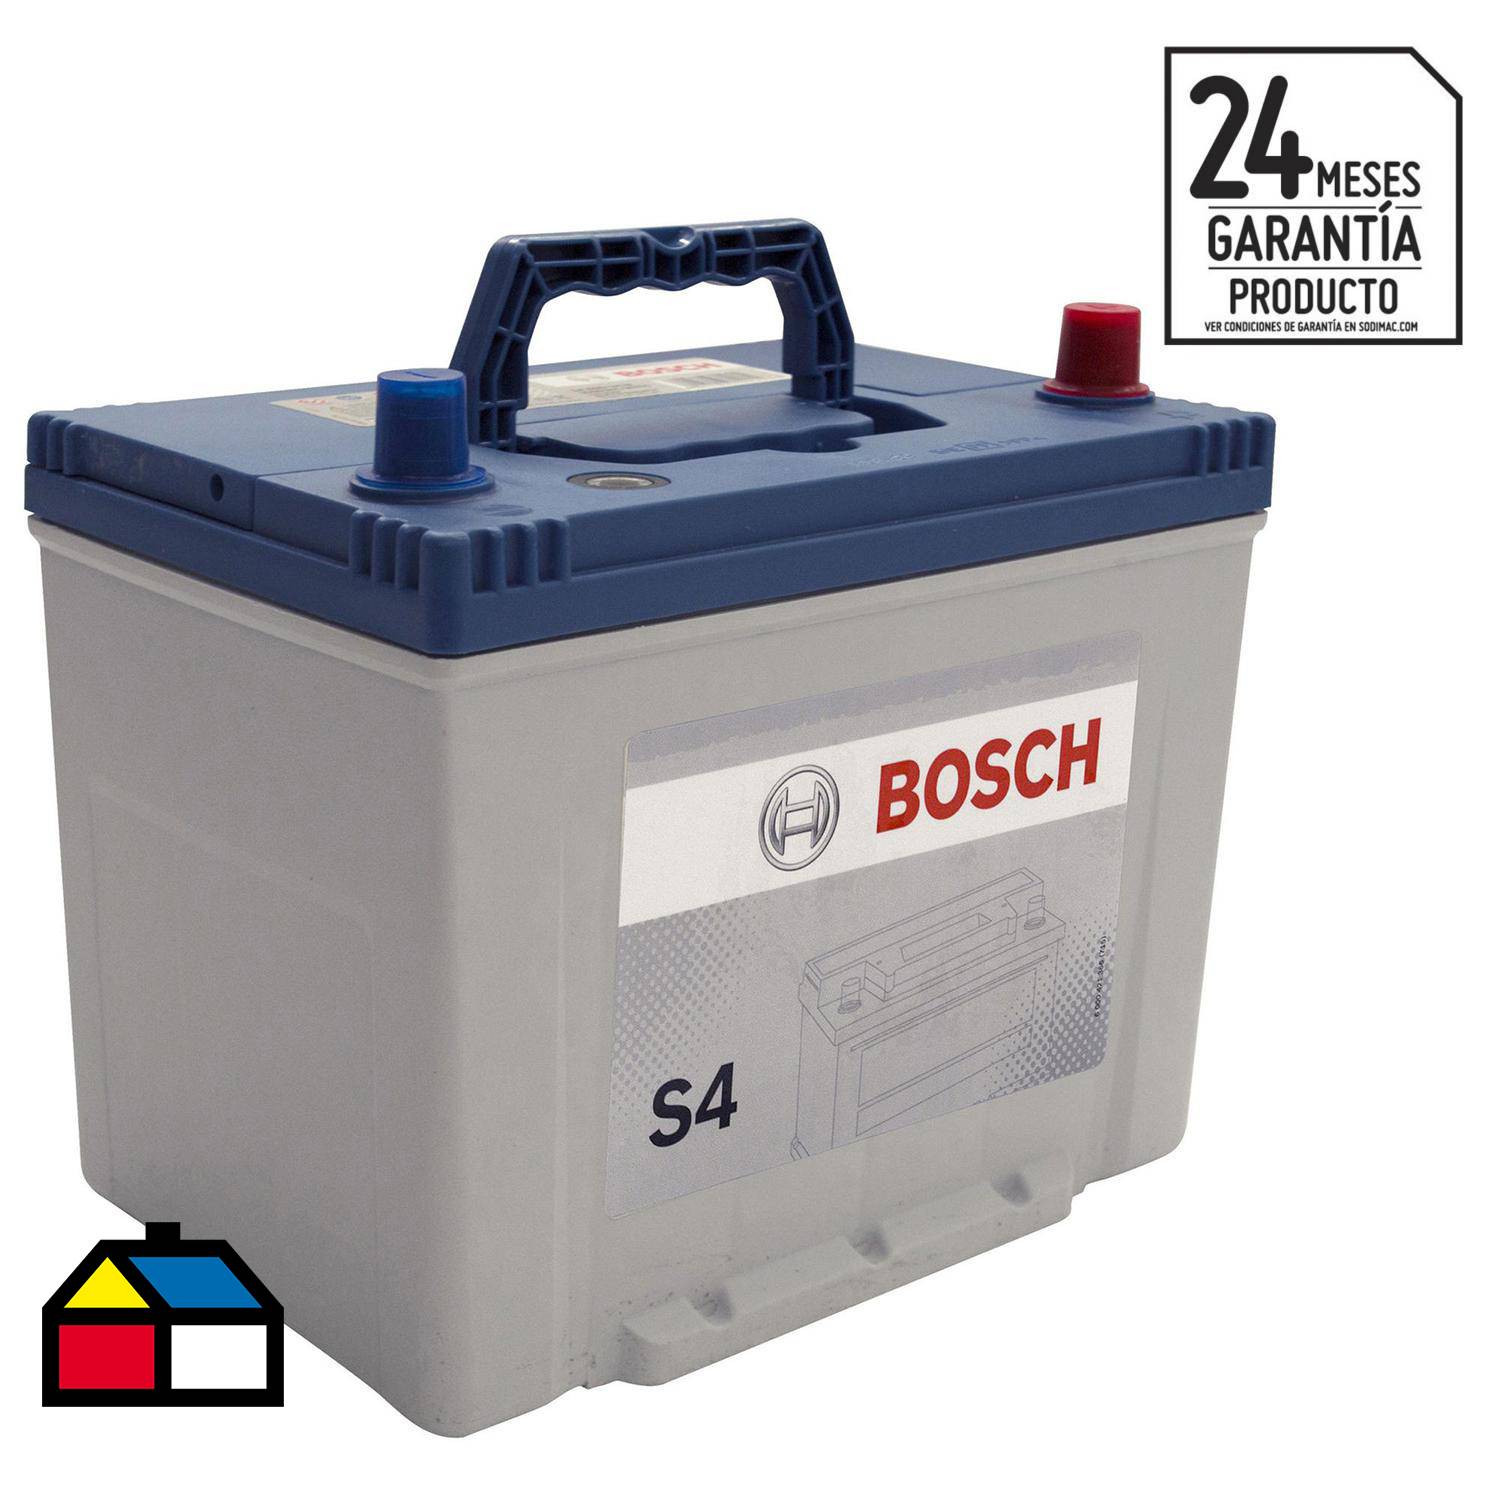 Batería para Automóvil 60Ah Positivo Derecho Bosch 39S560D-E